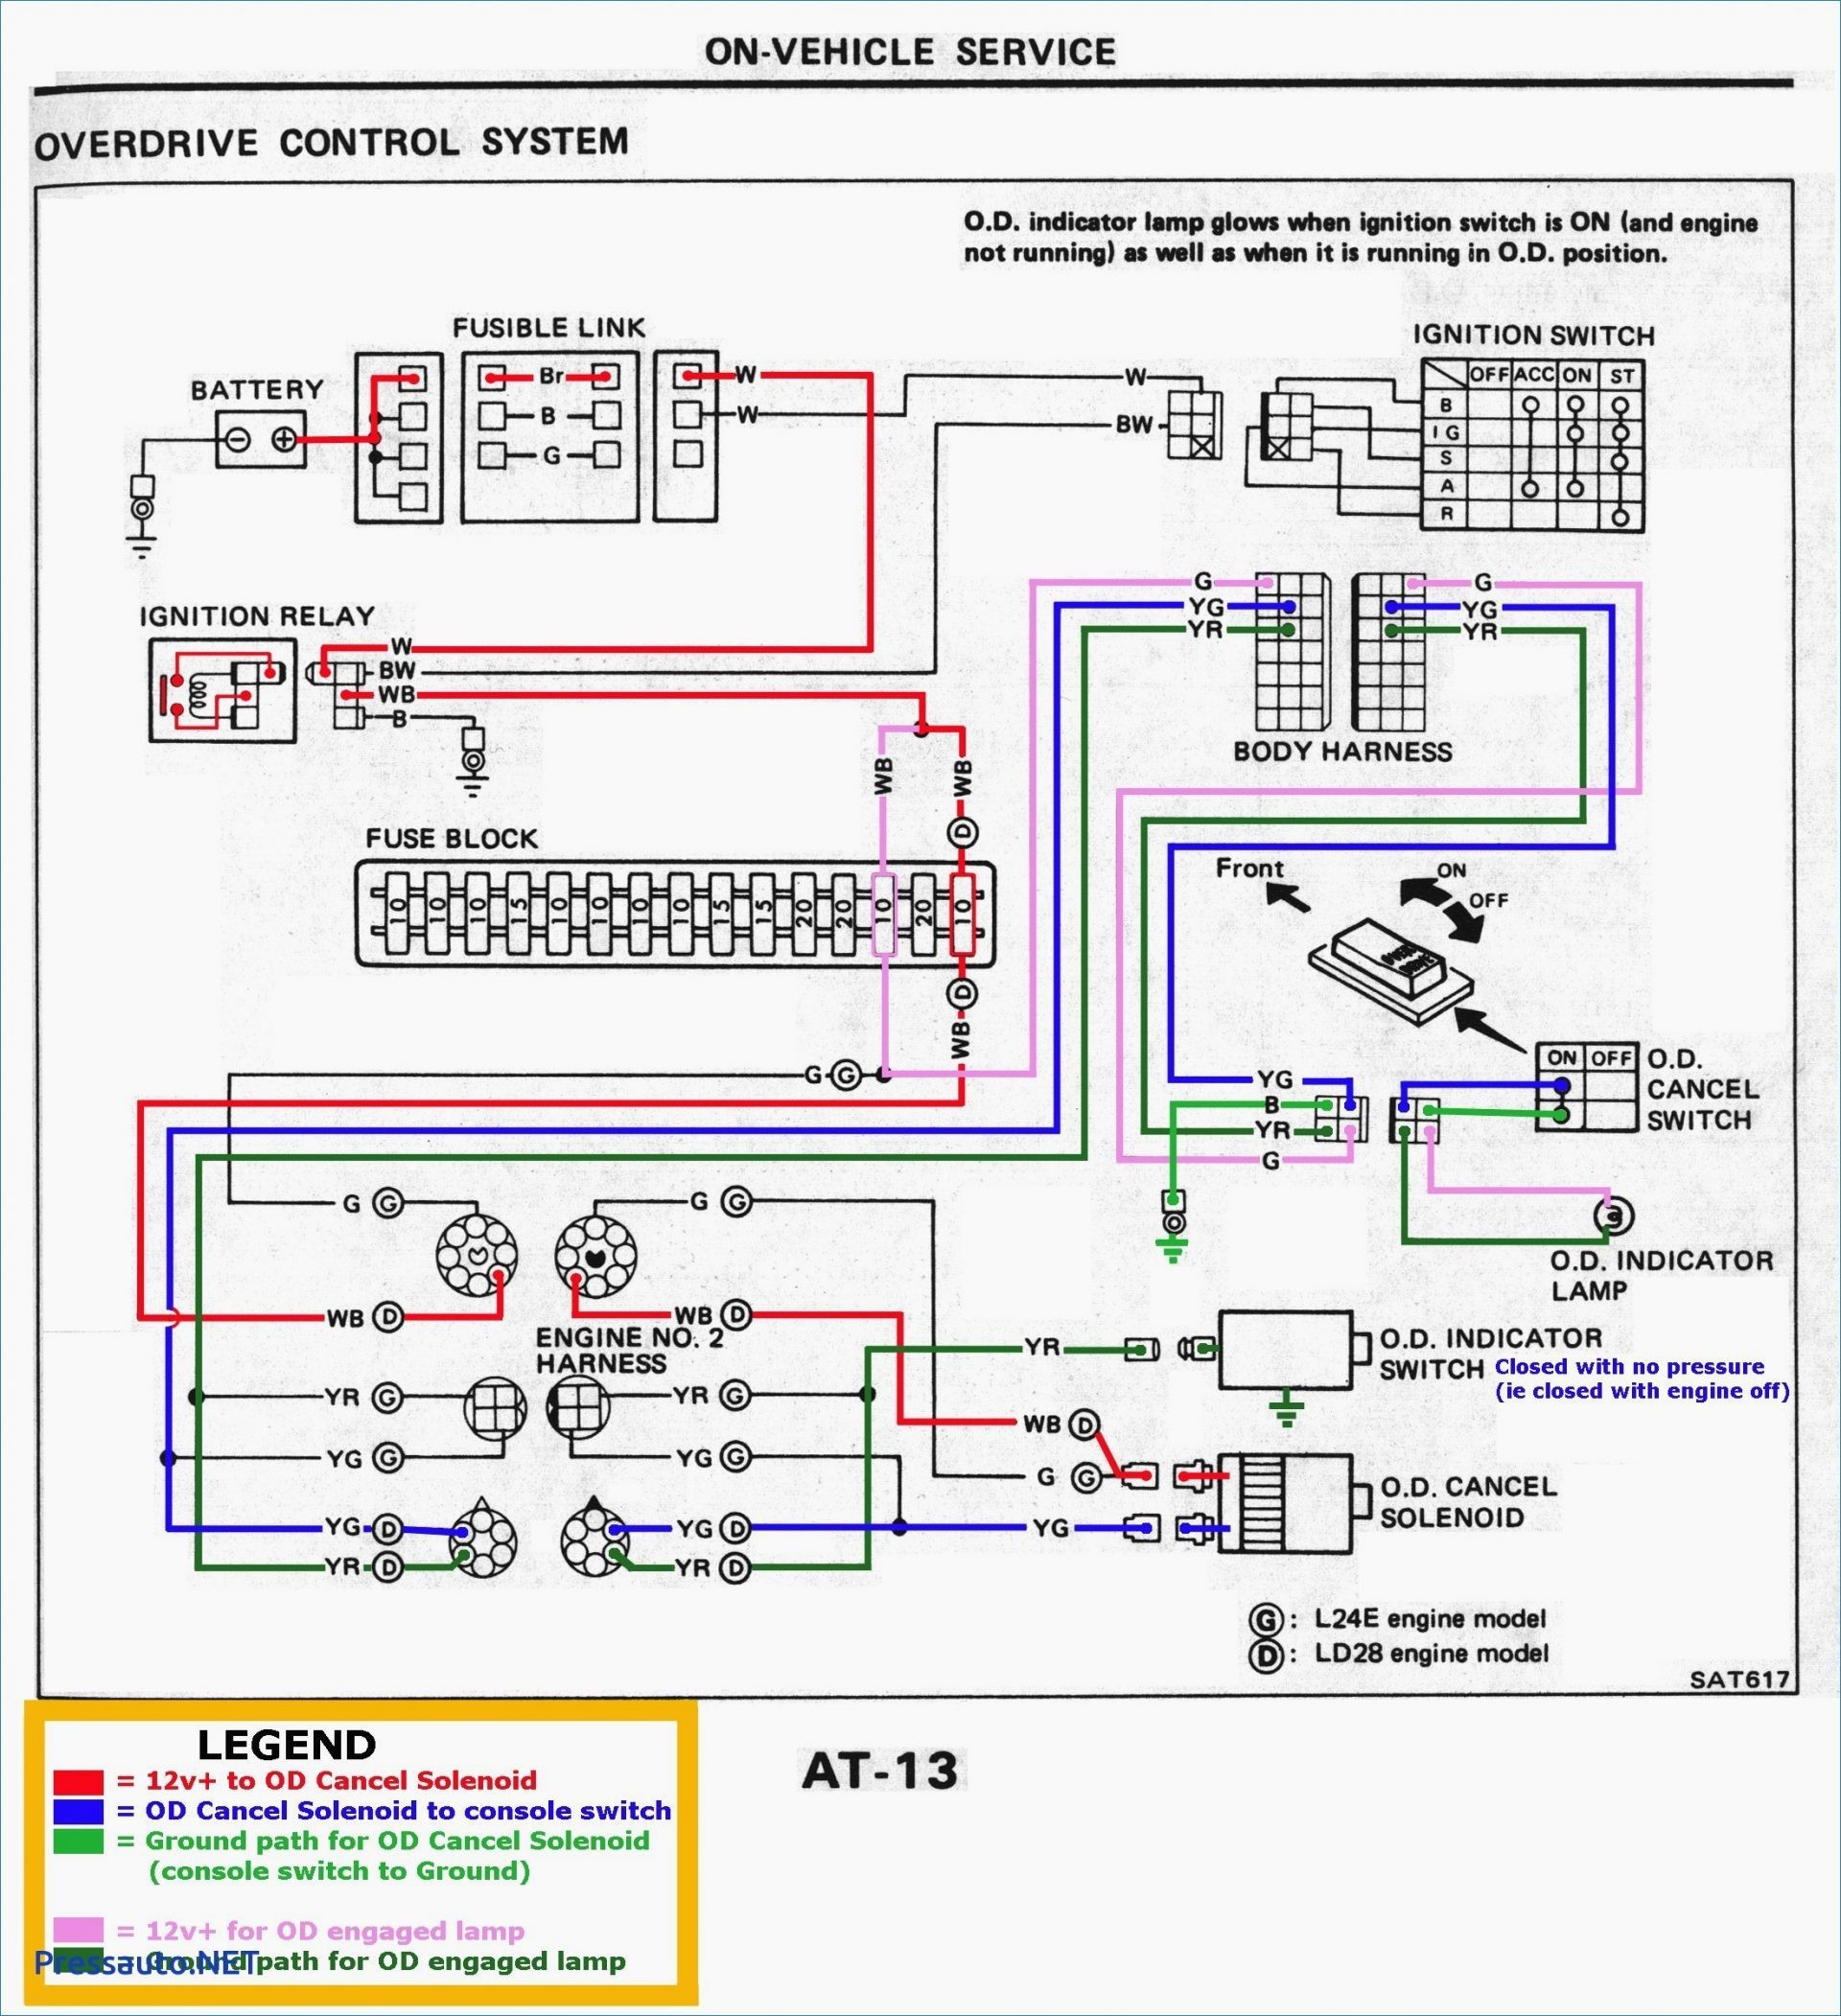 Light Wireing Diagram Wiring Diagram Honda Wave 100 Archives Joescablecar Of Light Wireing Diagram